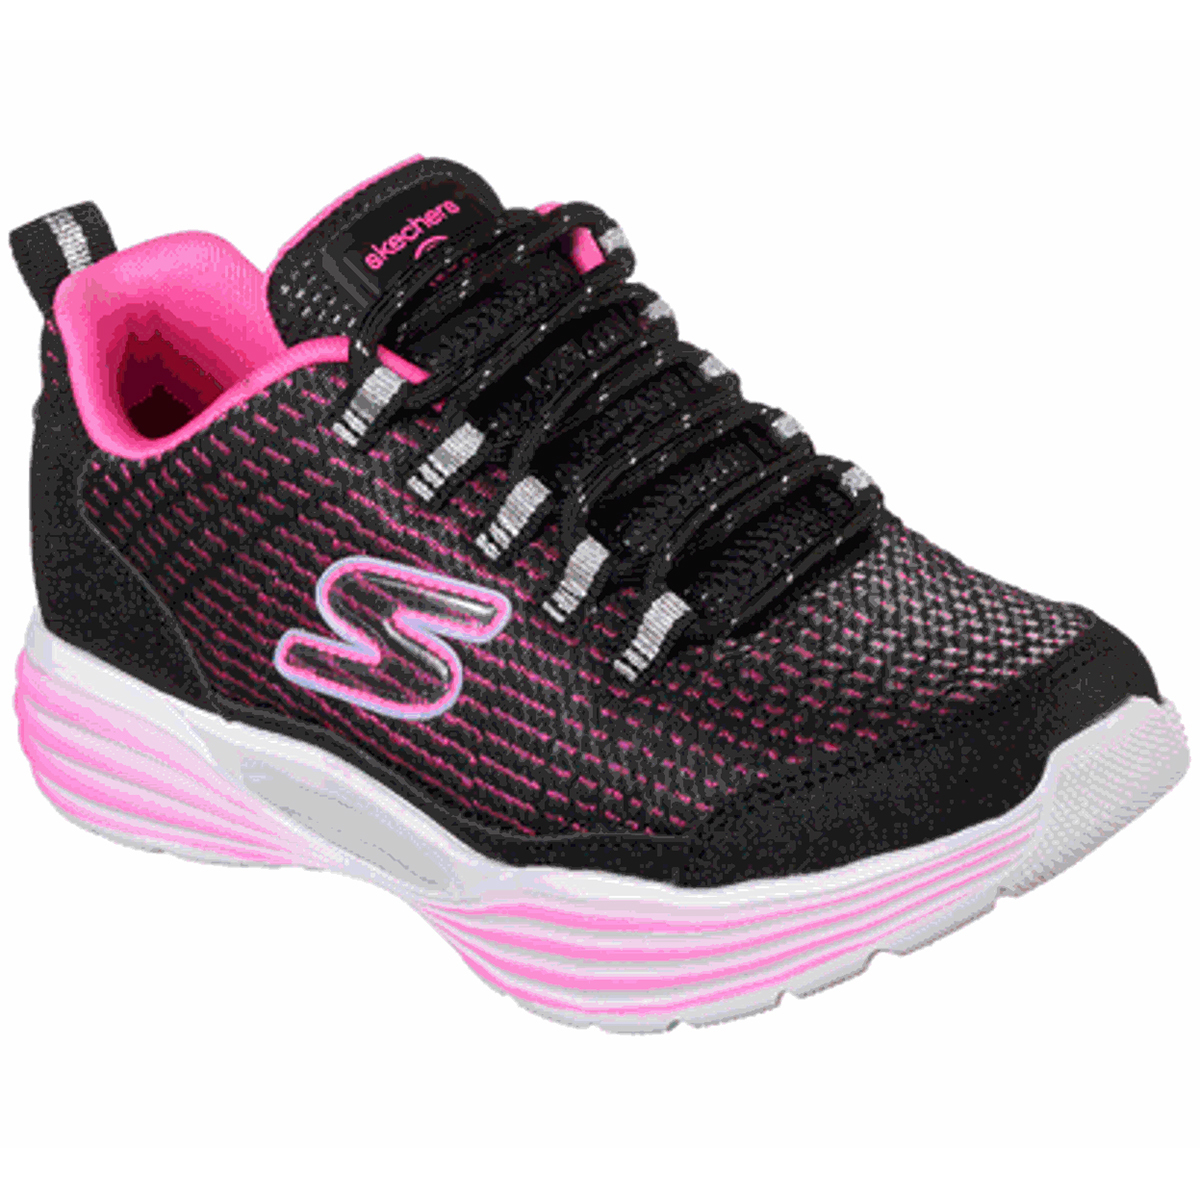 Skechers Little Girls' S Lights: Luminators Luxe Sneakers - Black, 13